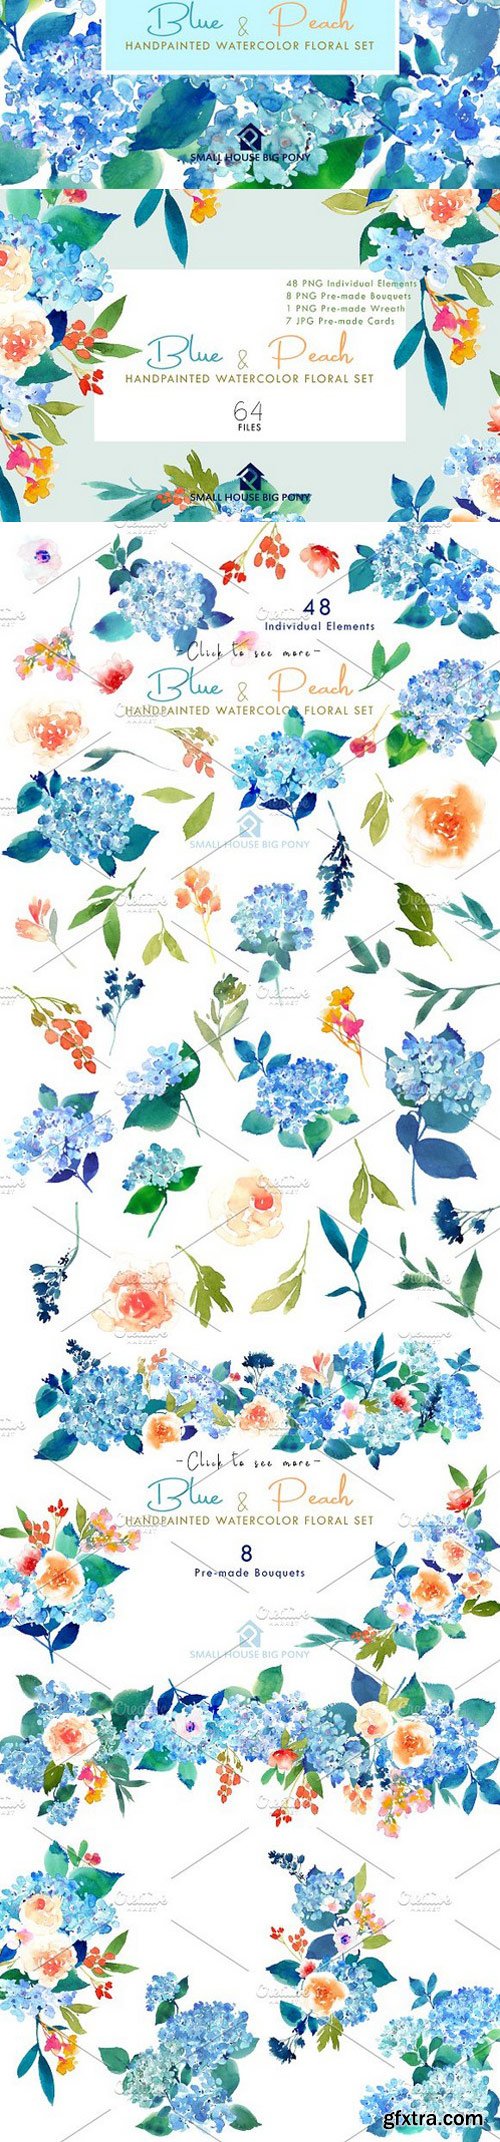 CM - Blue & Peach- Watercolor Floral Set 1290812